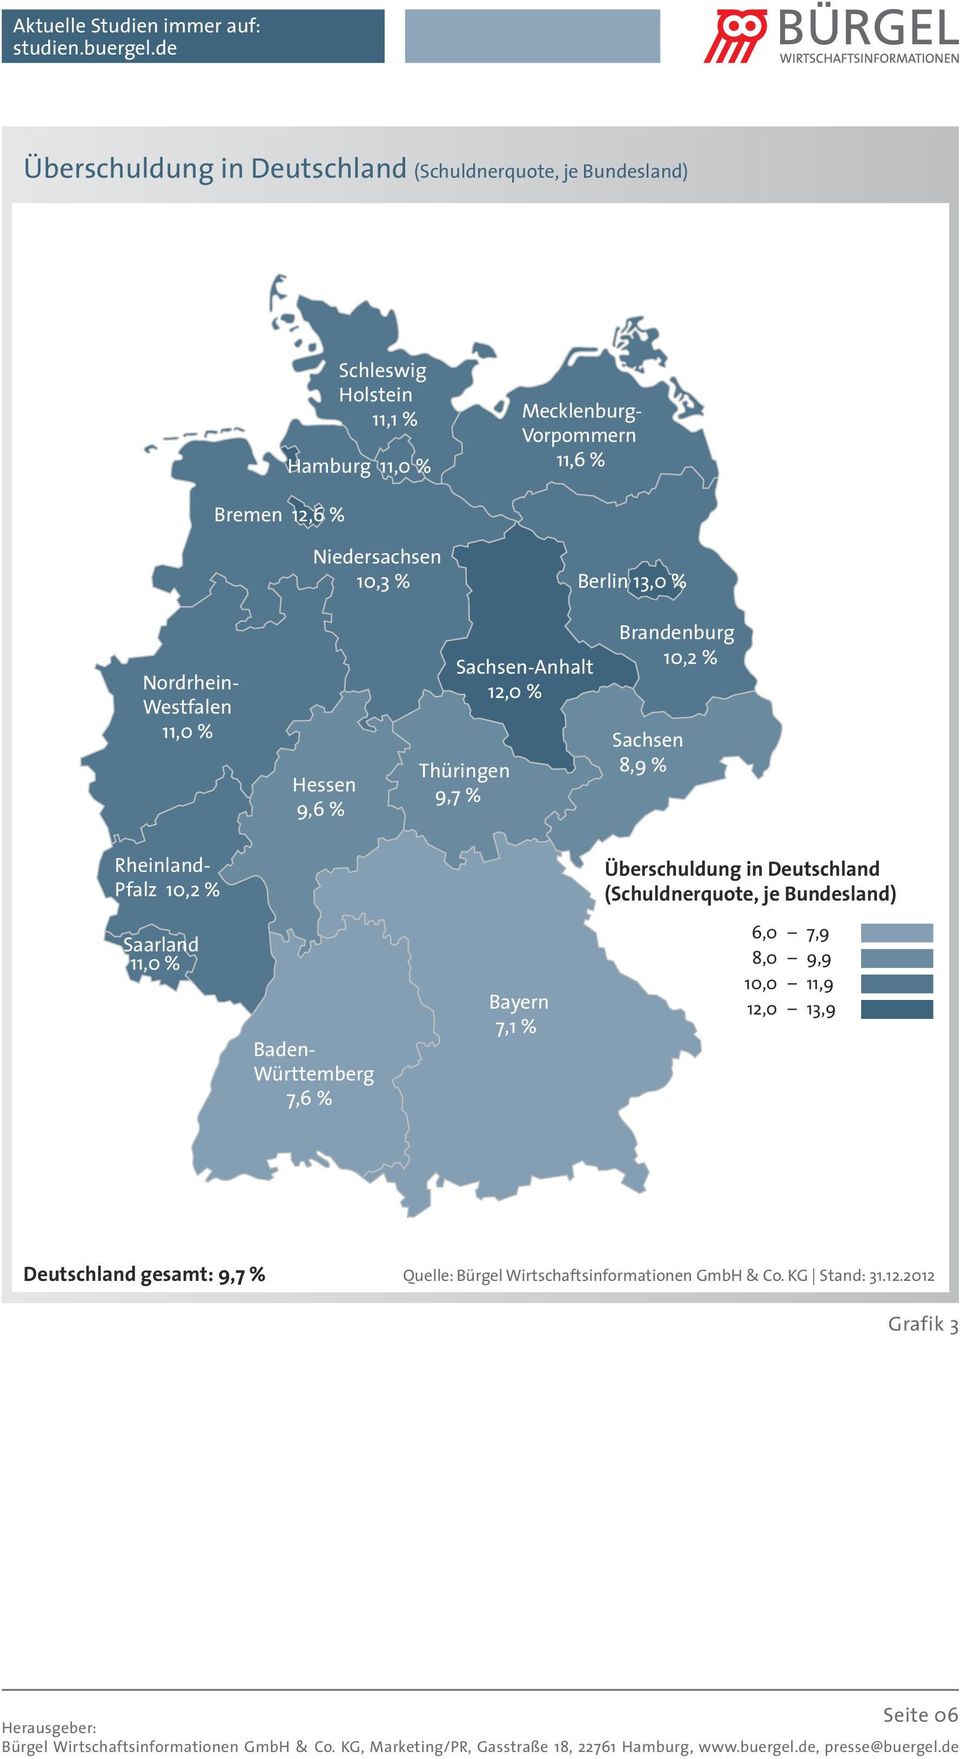 Brandenburg 10,2 % Sachsen 8,9 % Rheinland- Pfalz 10,2 % Überschuldung in Deutschland (Schuldnerquote, je Bundesland) Saarland 11,0